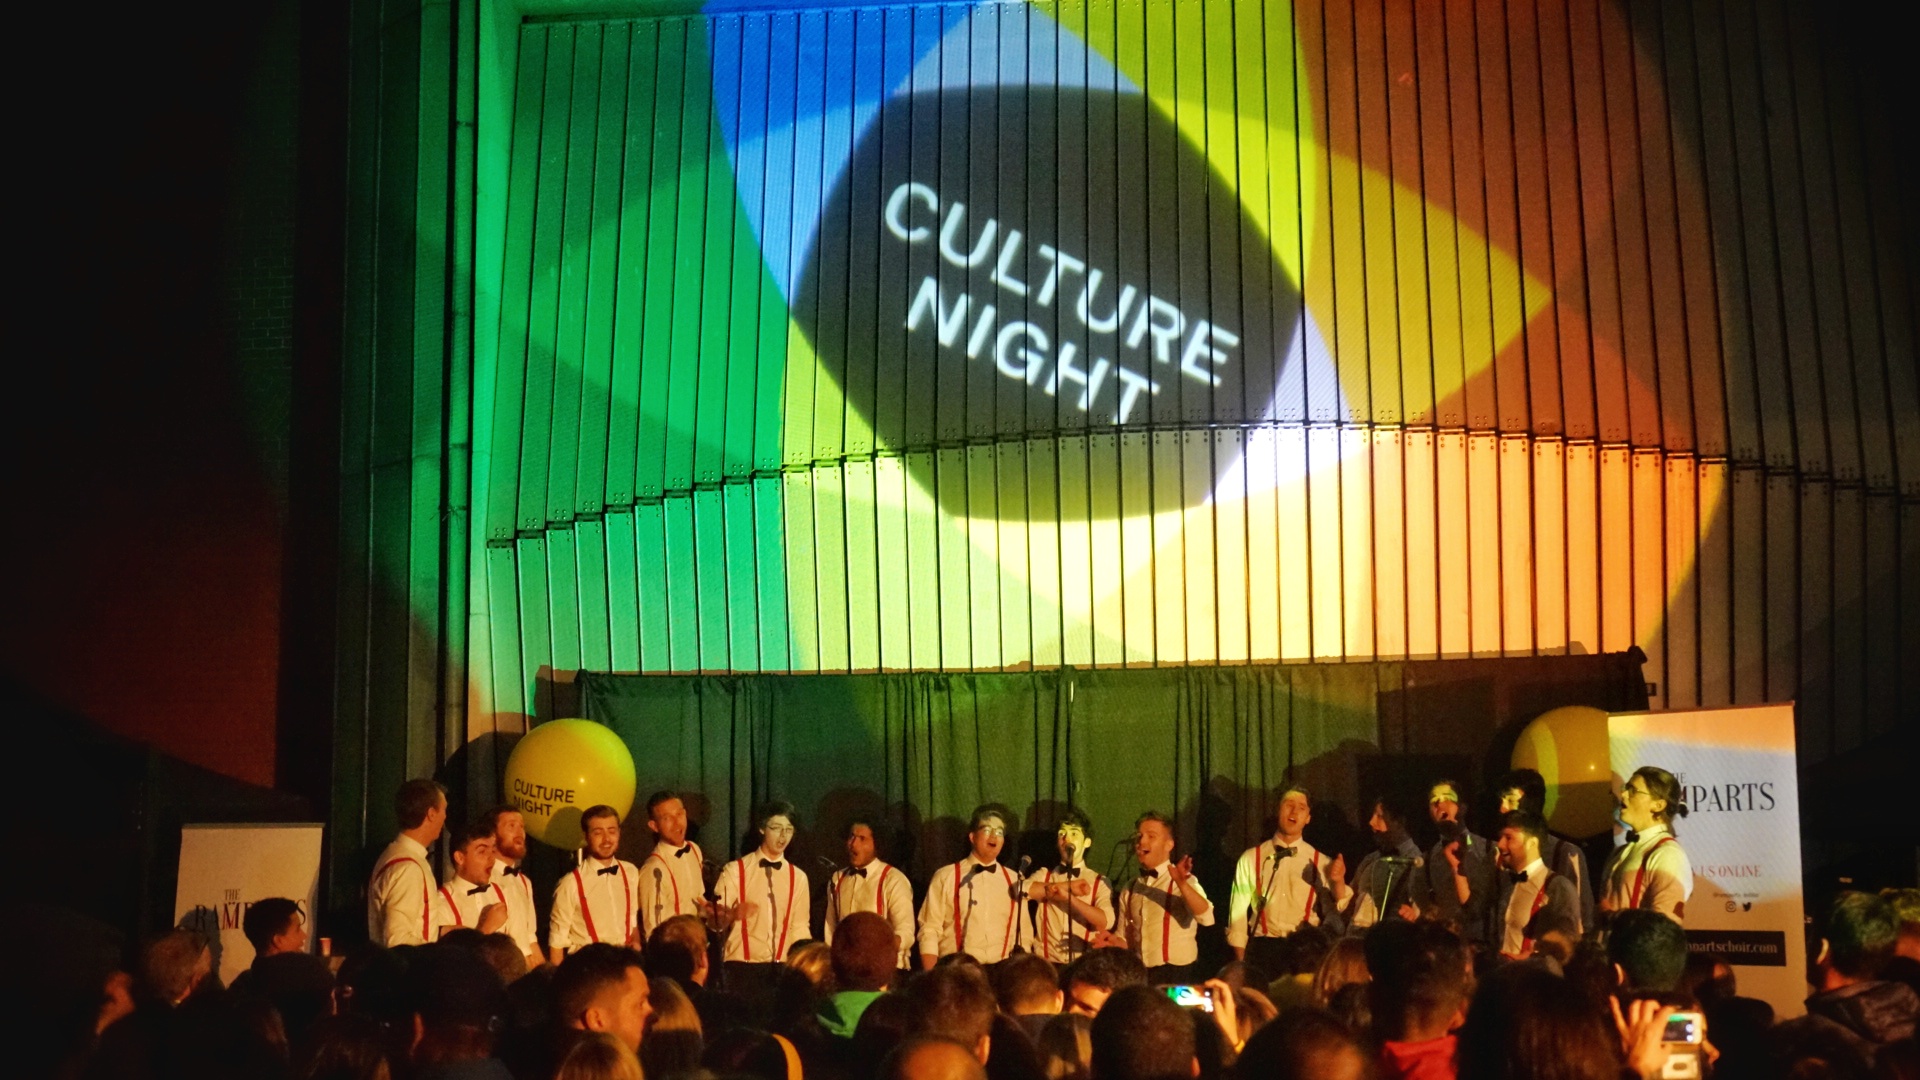 Noc Kultury czyli Culture Night w Irlandii